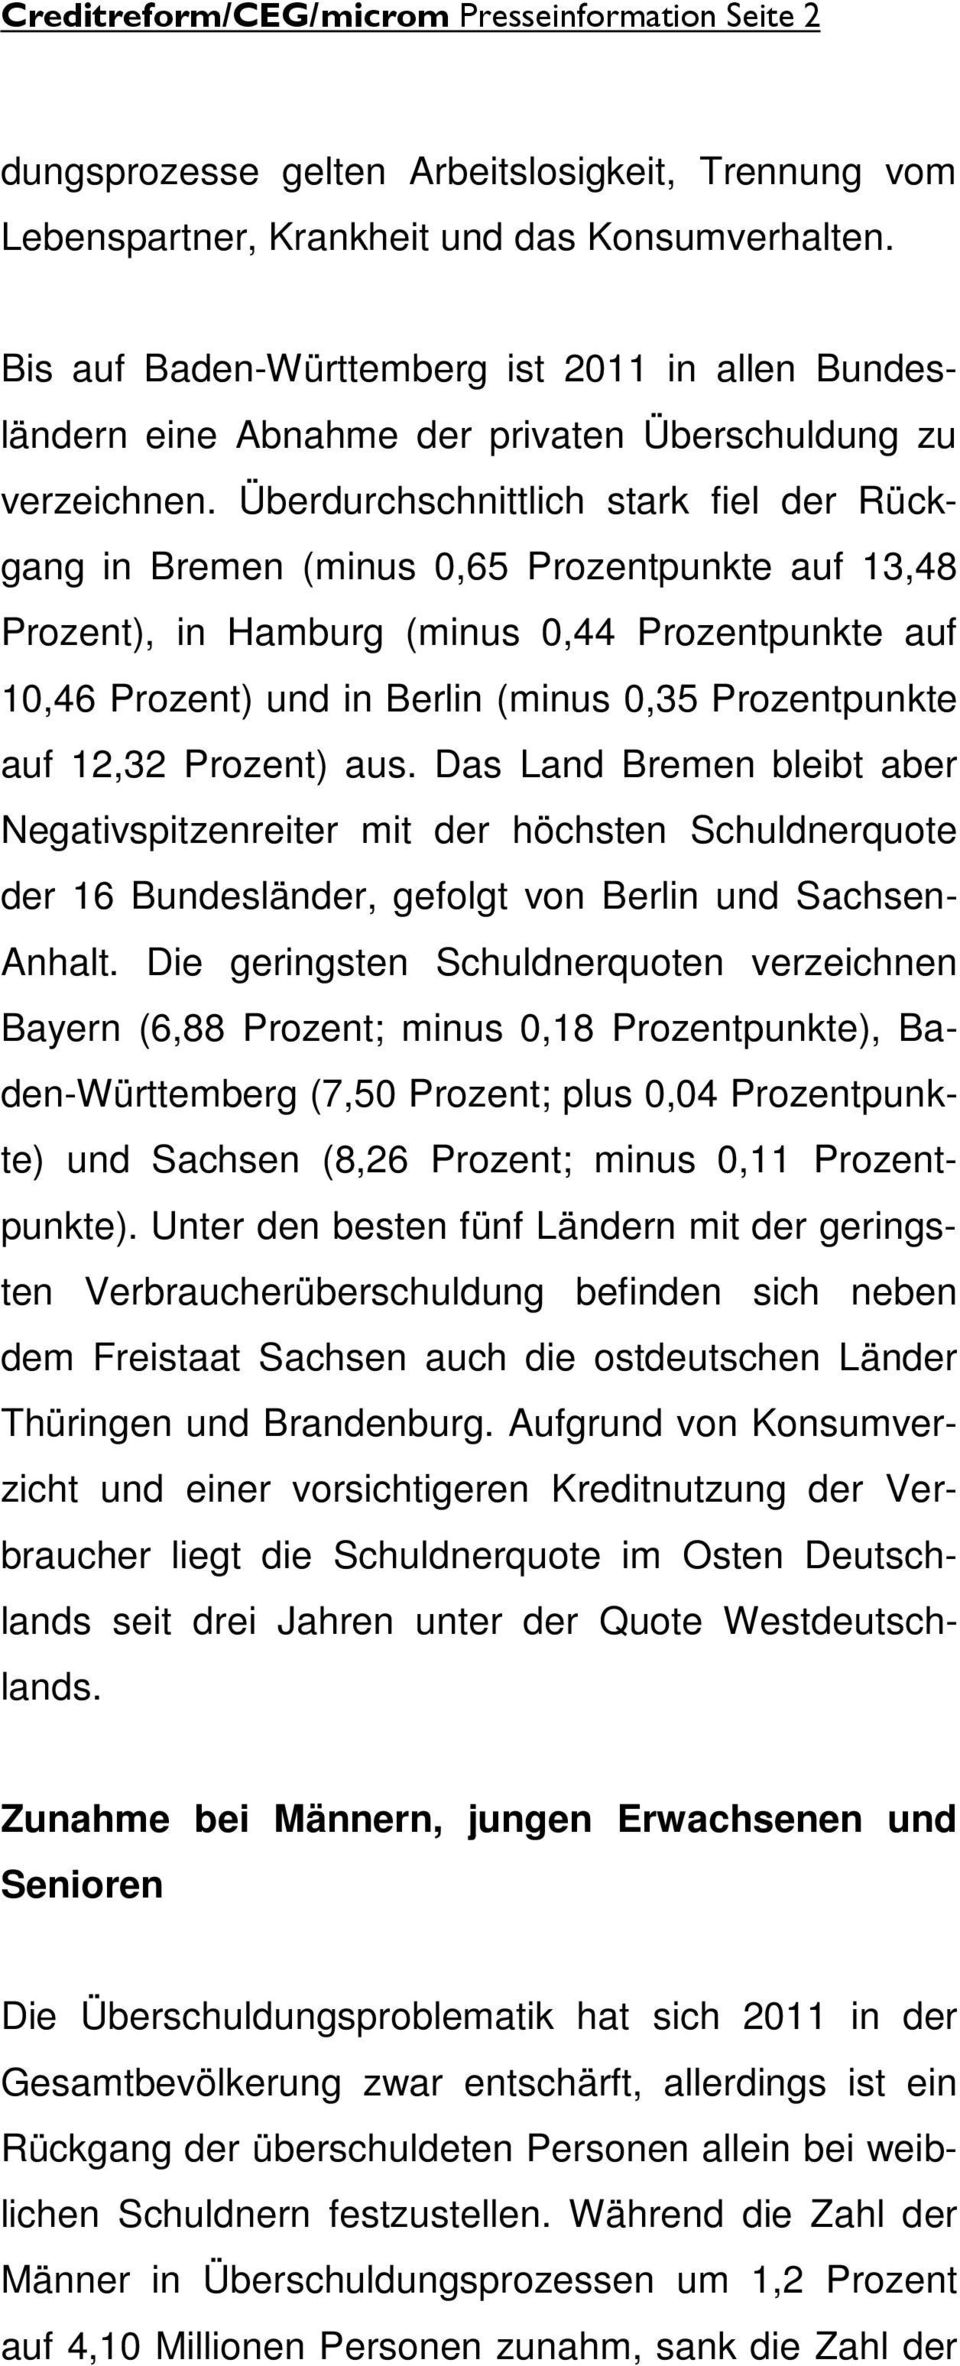 Überdurchschnittlich stark fiel der Rückgang in Bremen (minus 0,65 Prozentpunkte auf 13,48 Prozent), in Hamburg (minus 0,44 Prozentpunkte auf 10,46 Prozent) und in Berlin (minus 0,35 Prozentpunkte